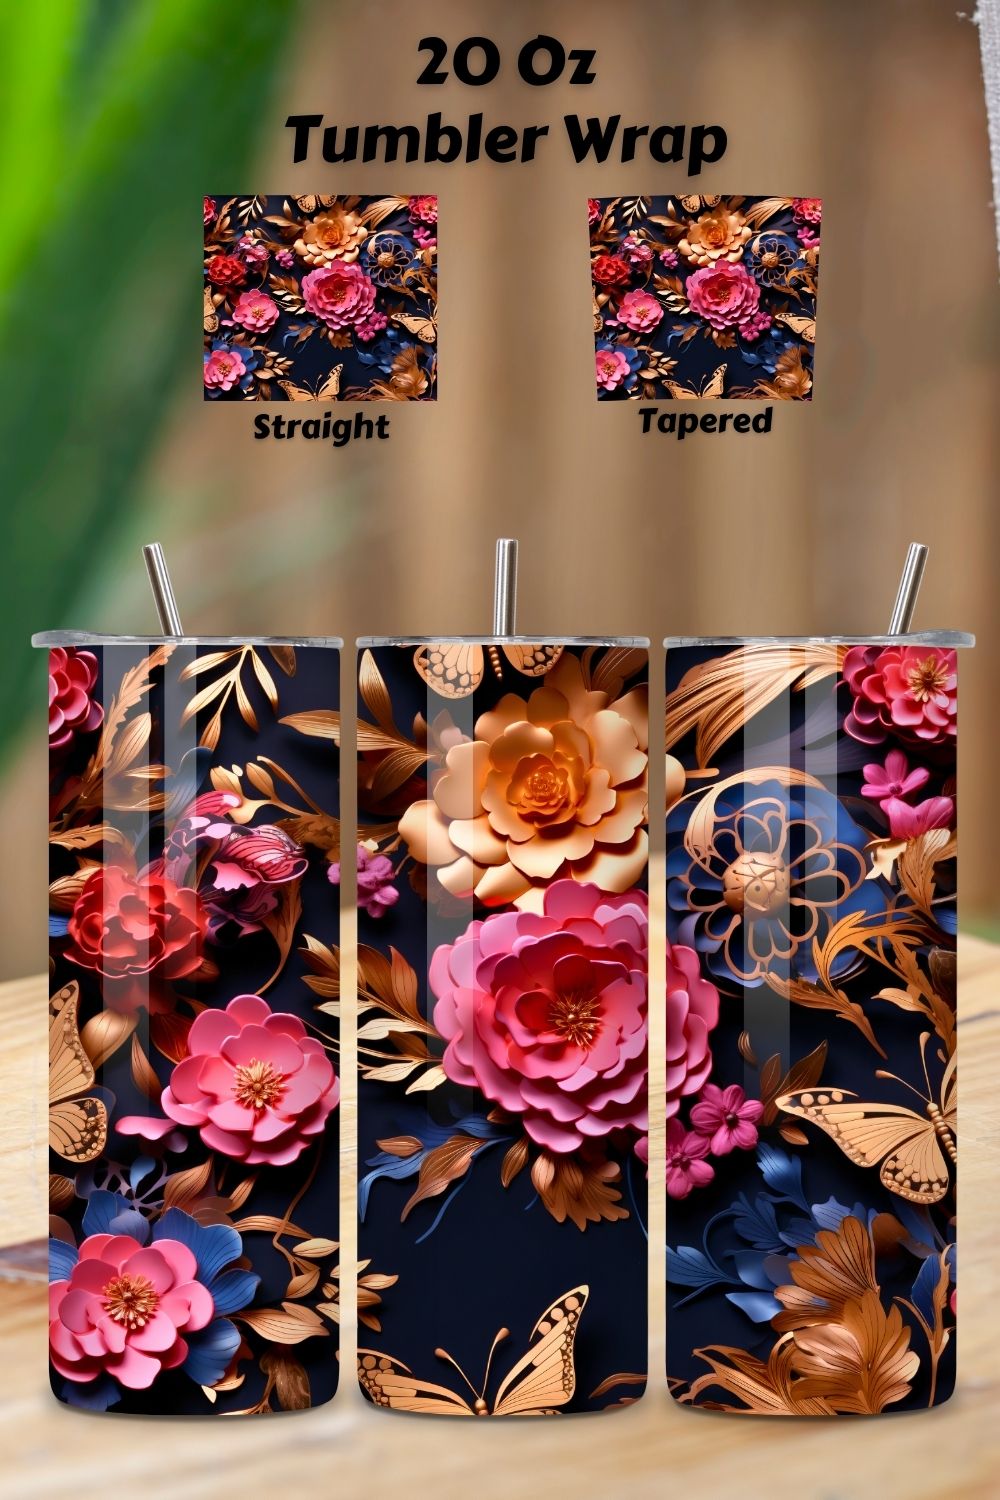 3D floral arrangement Tumbler Wrap, Seamless Tumbler Wrap, 3d butterfly tumbler, 3d tumbler design, 3d tumbler png, 3d tumbler wrap pinterest preview image.